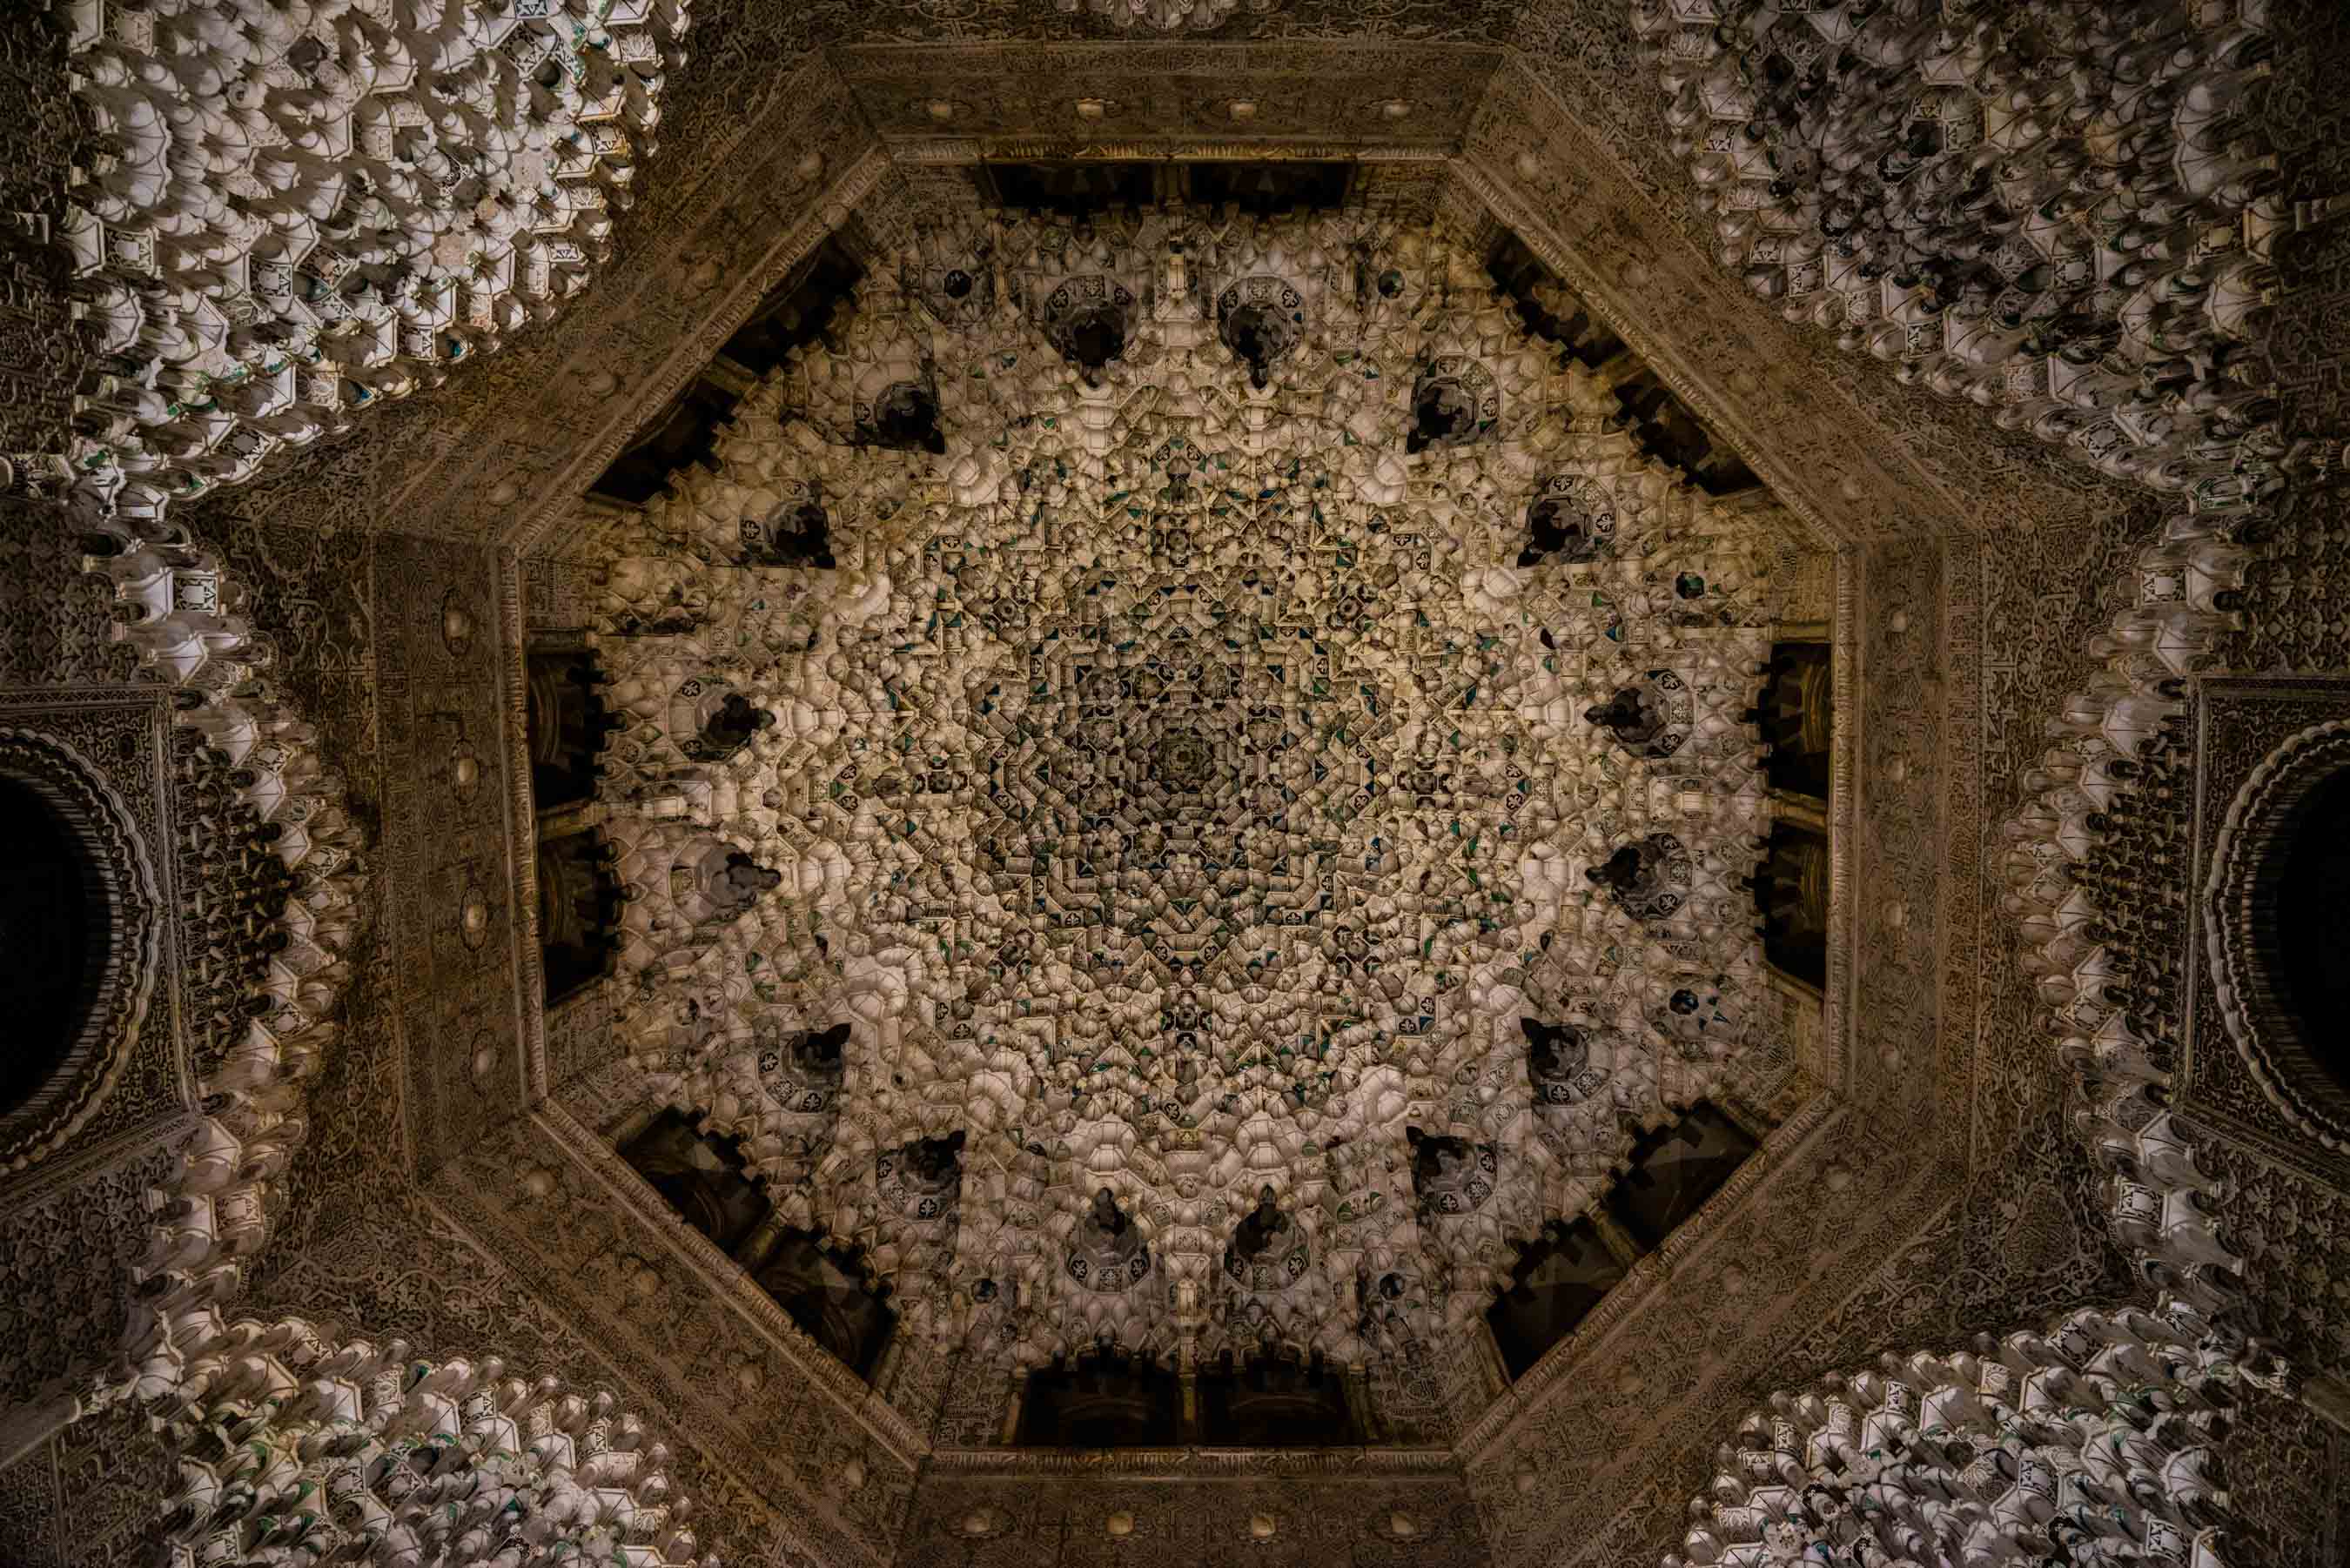 Granada Alhambra - by night - dome